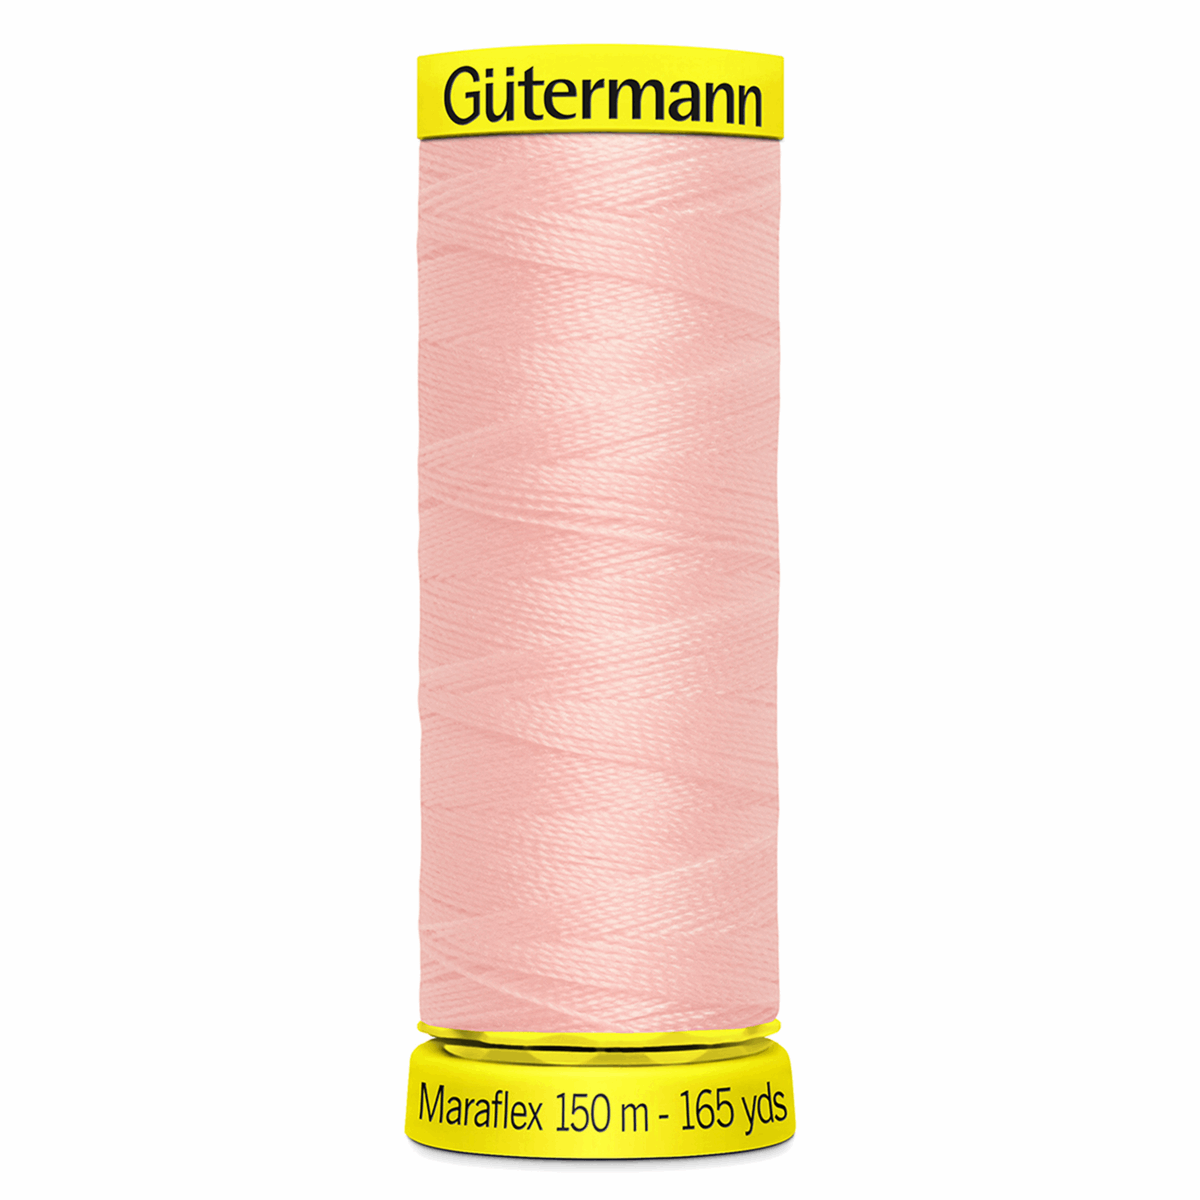 Gutermann Maraflex Elastic Sewing Thread 150m Powder Pink 659